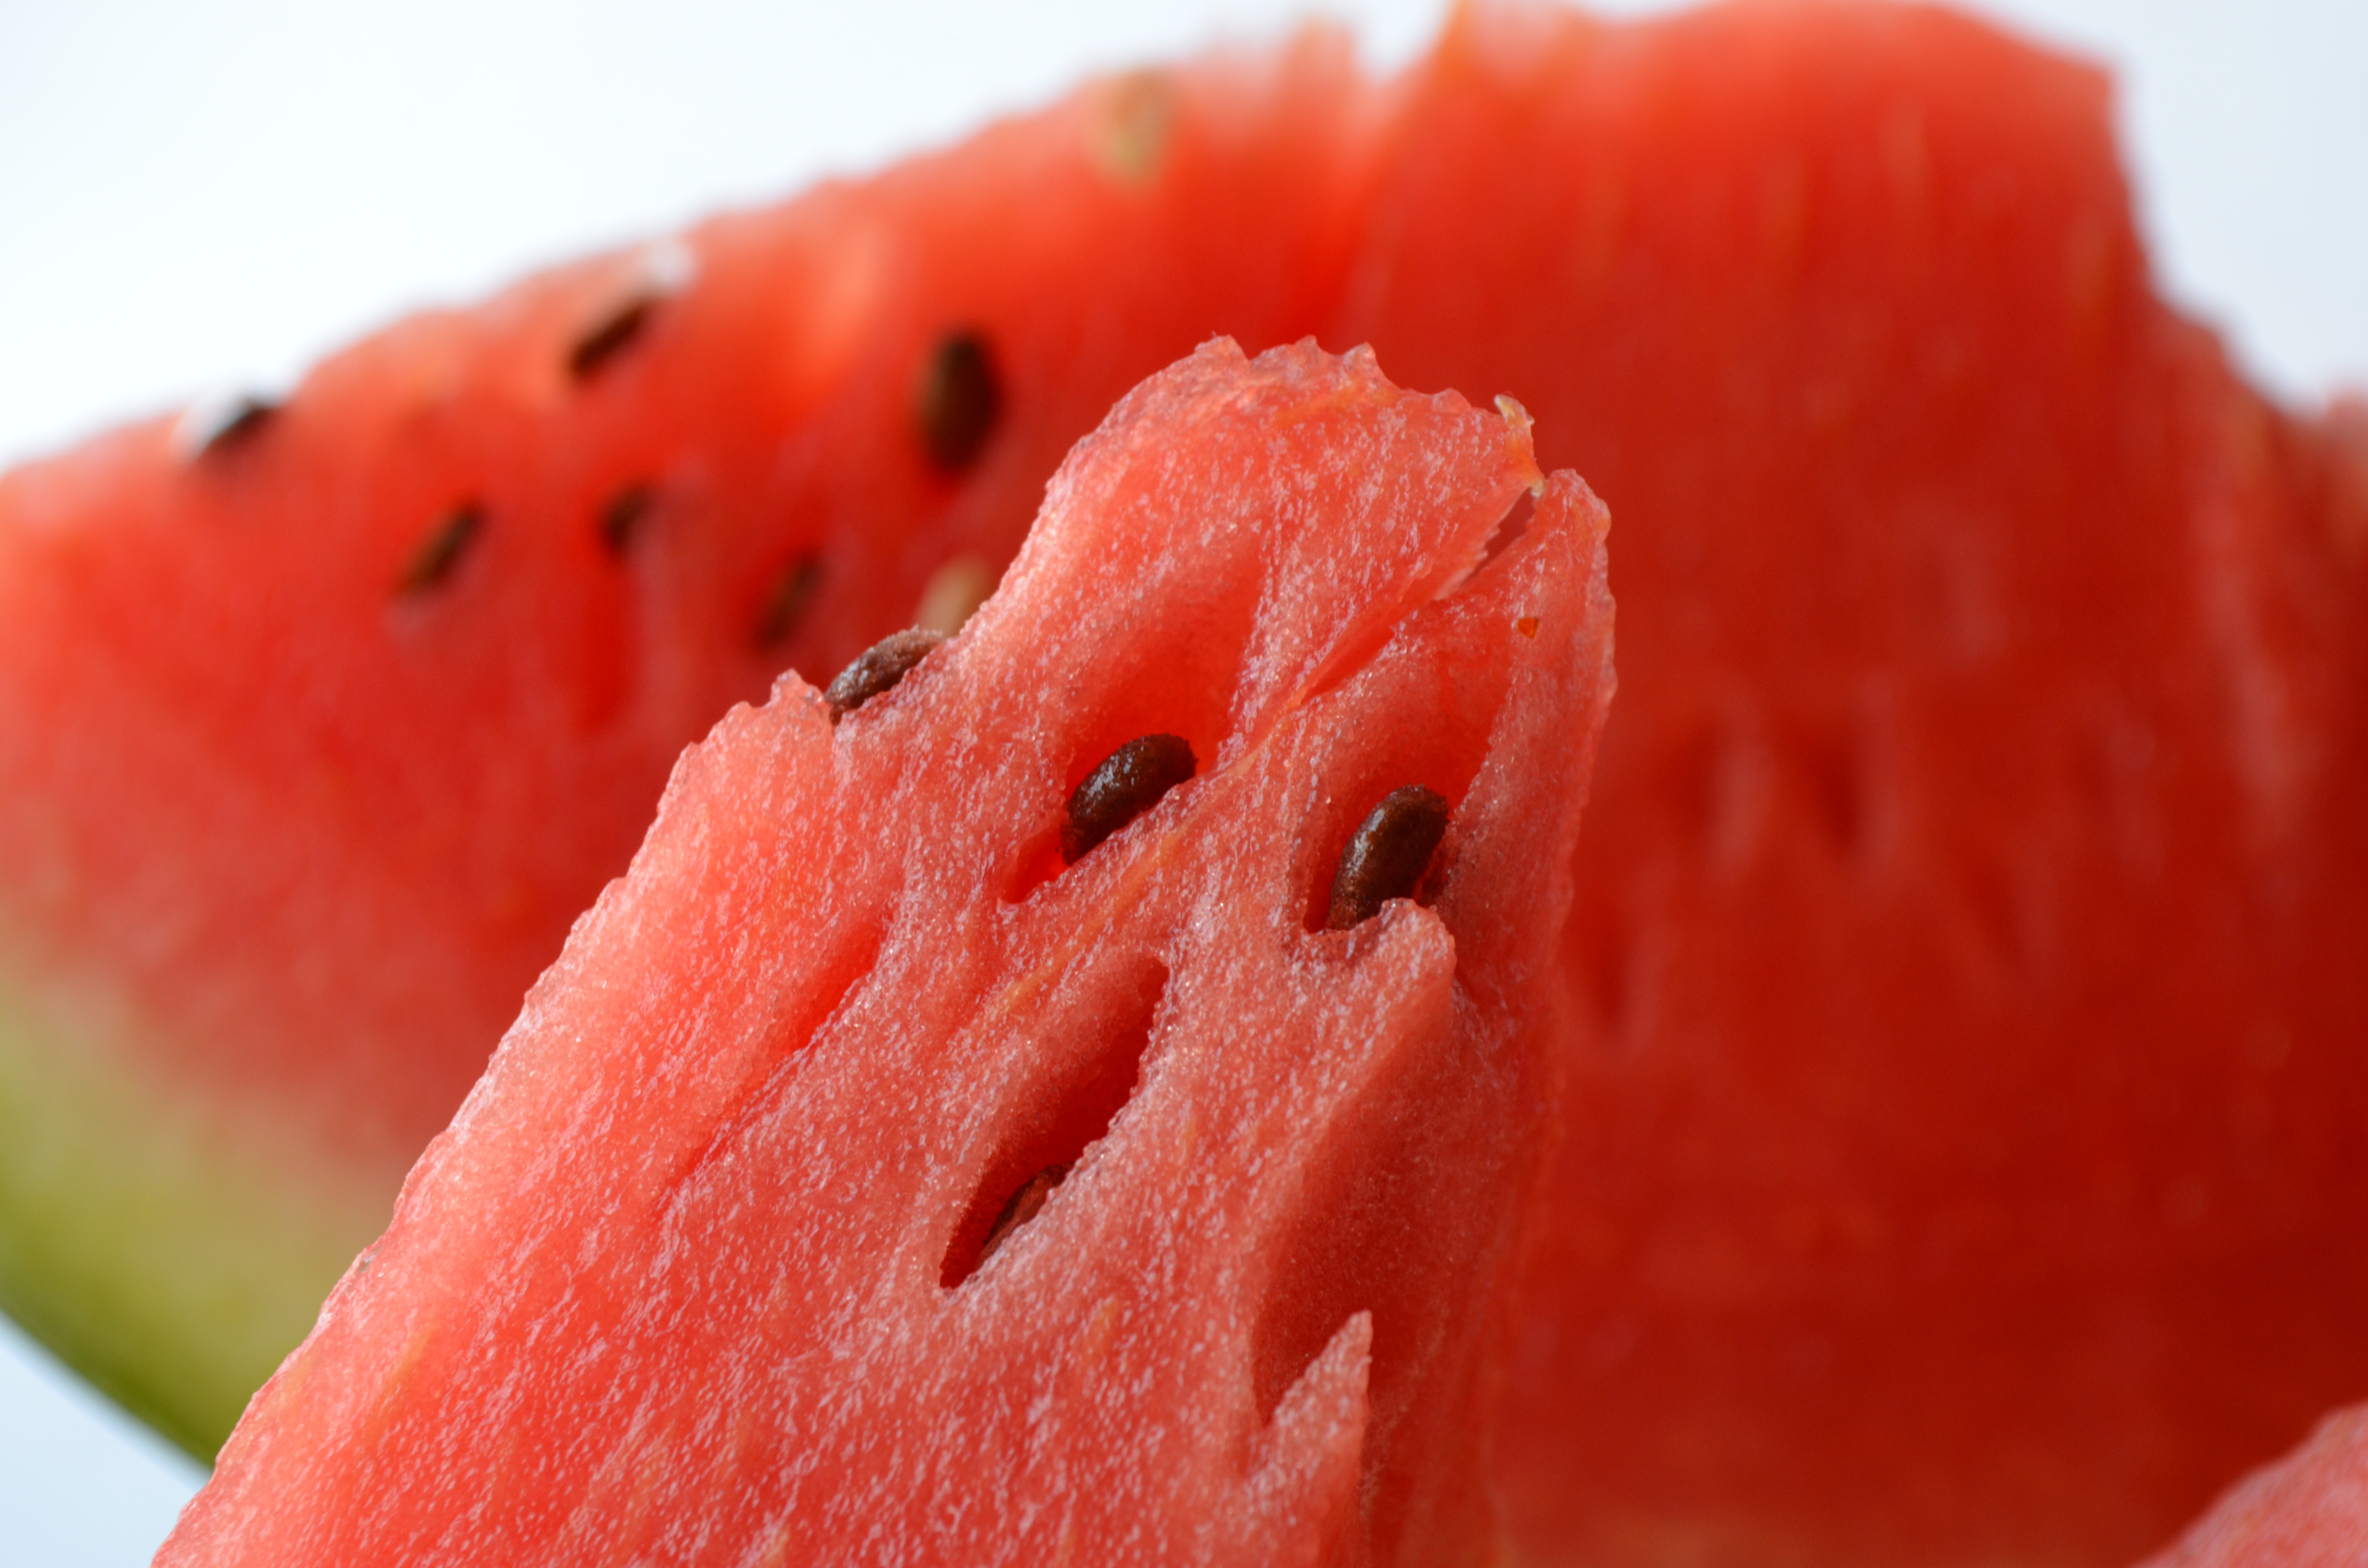 Fruit closeup photo